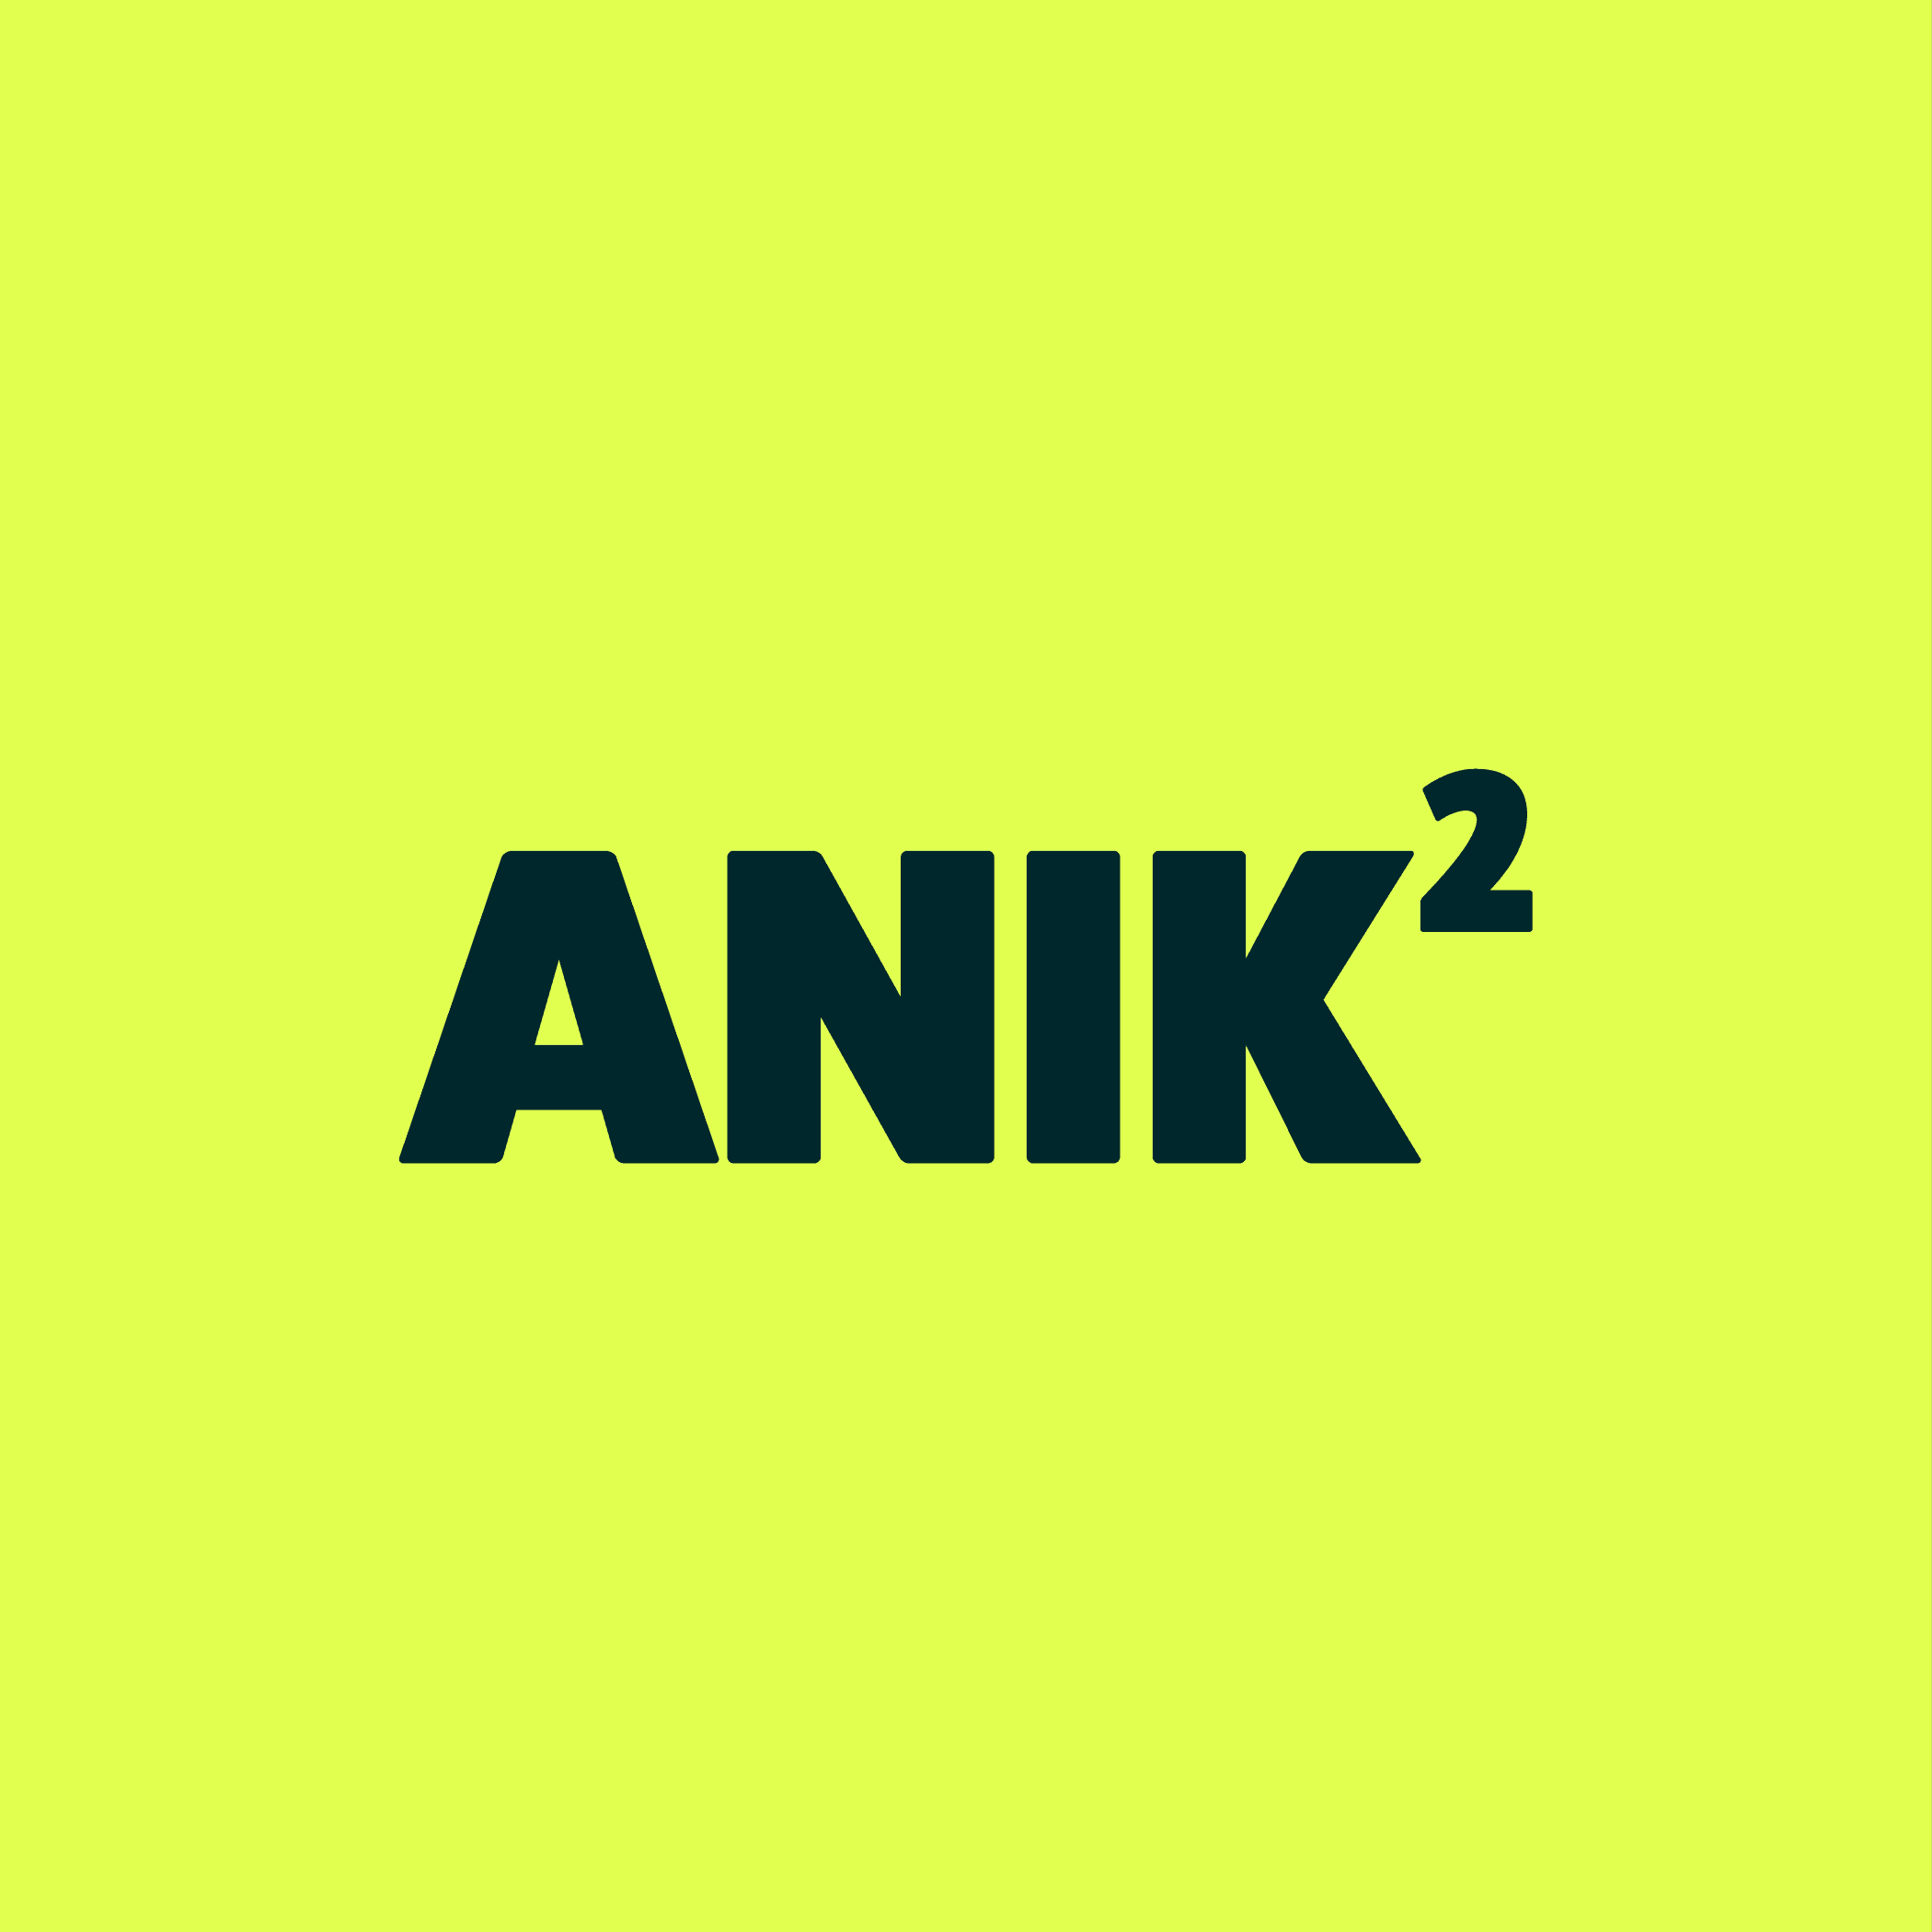 anik squared logo